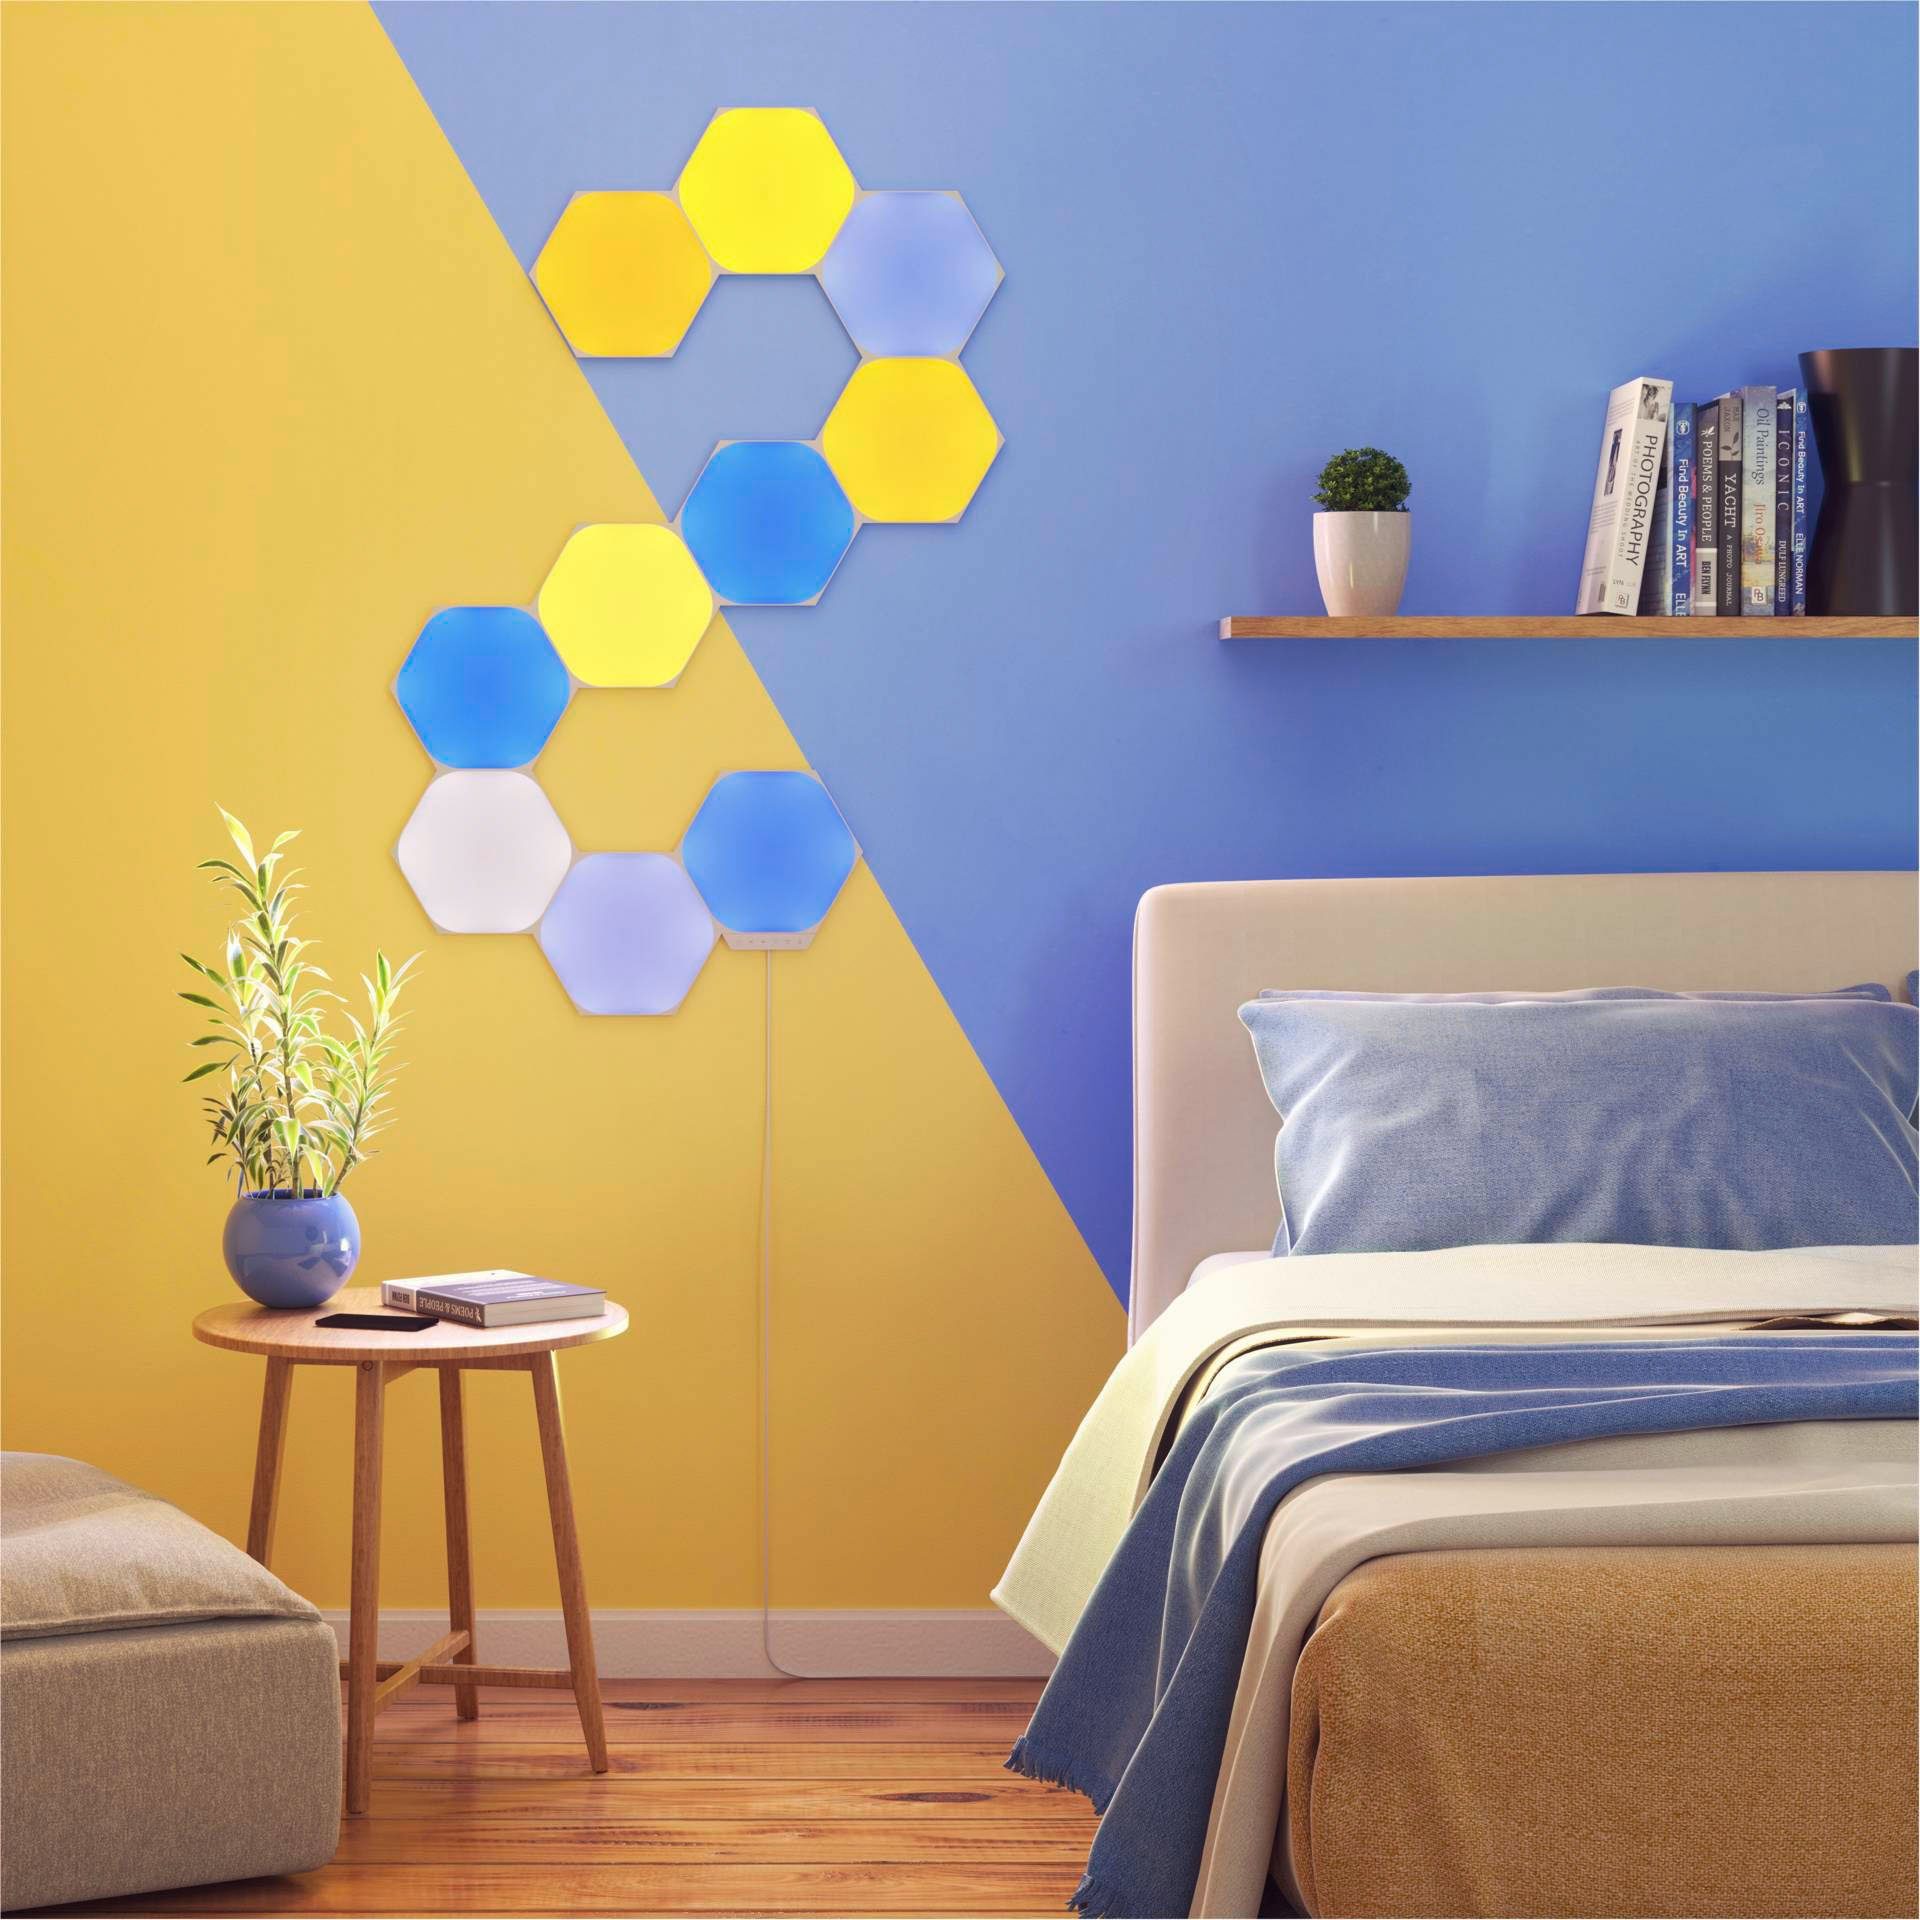 Dimmfunktion, Hexagons, fest integriert, nanoleaf LED Panel Farbwechsler LED